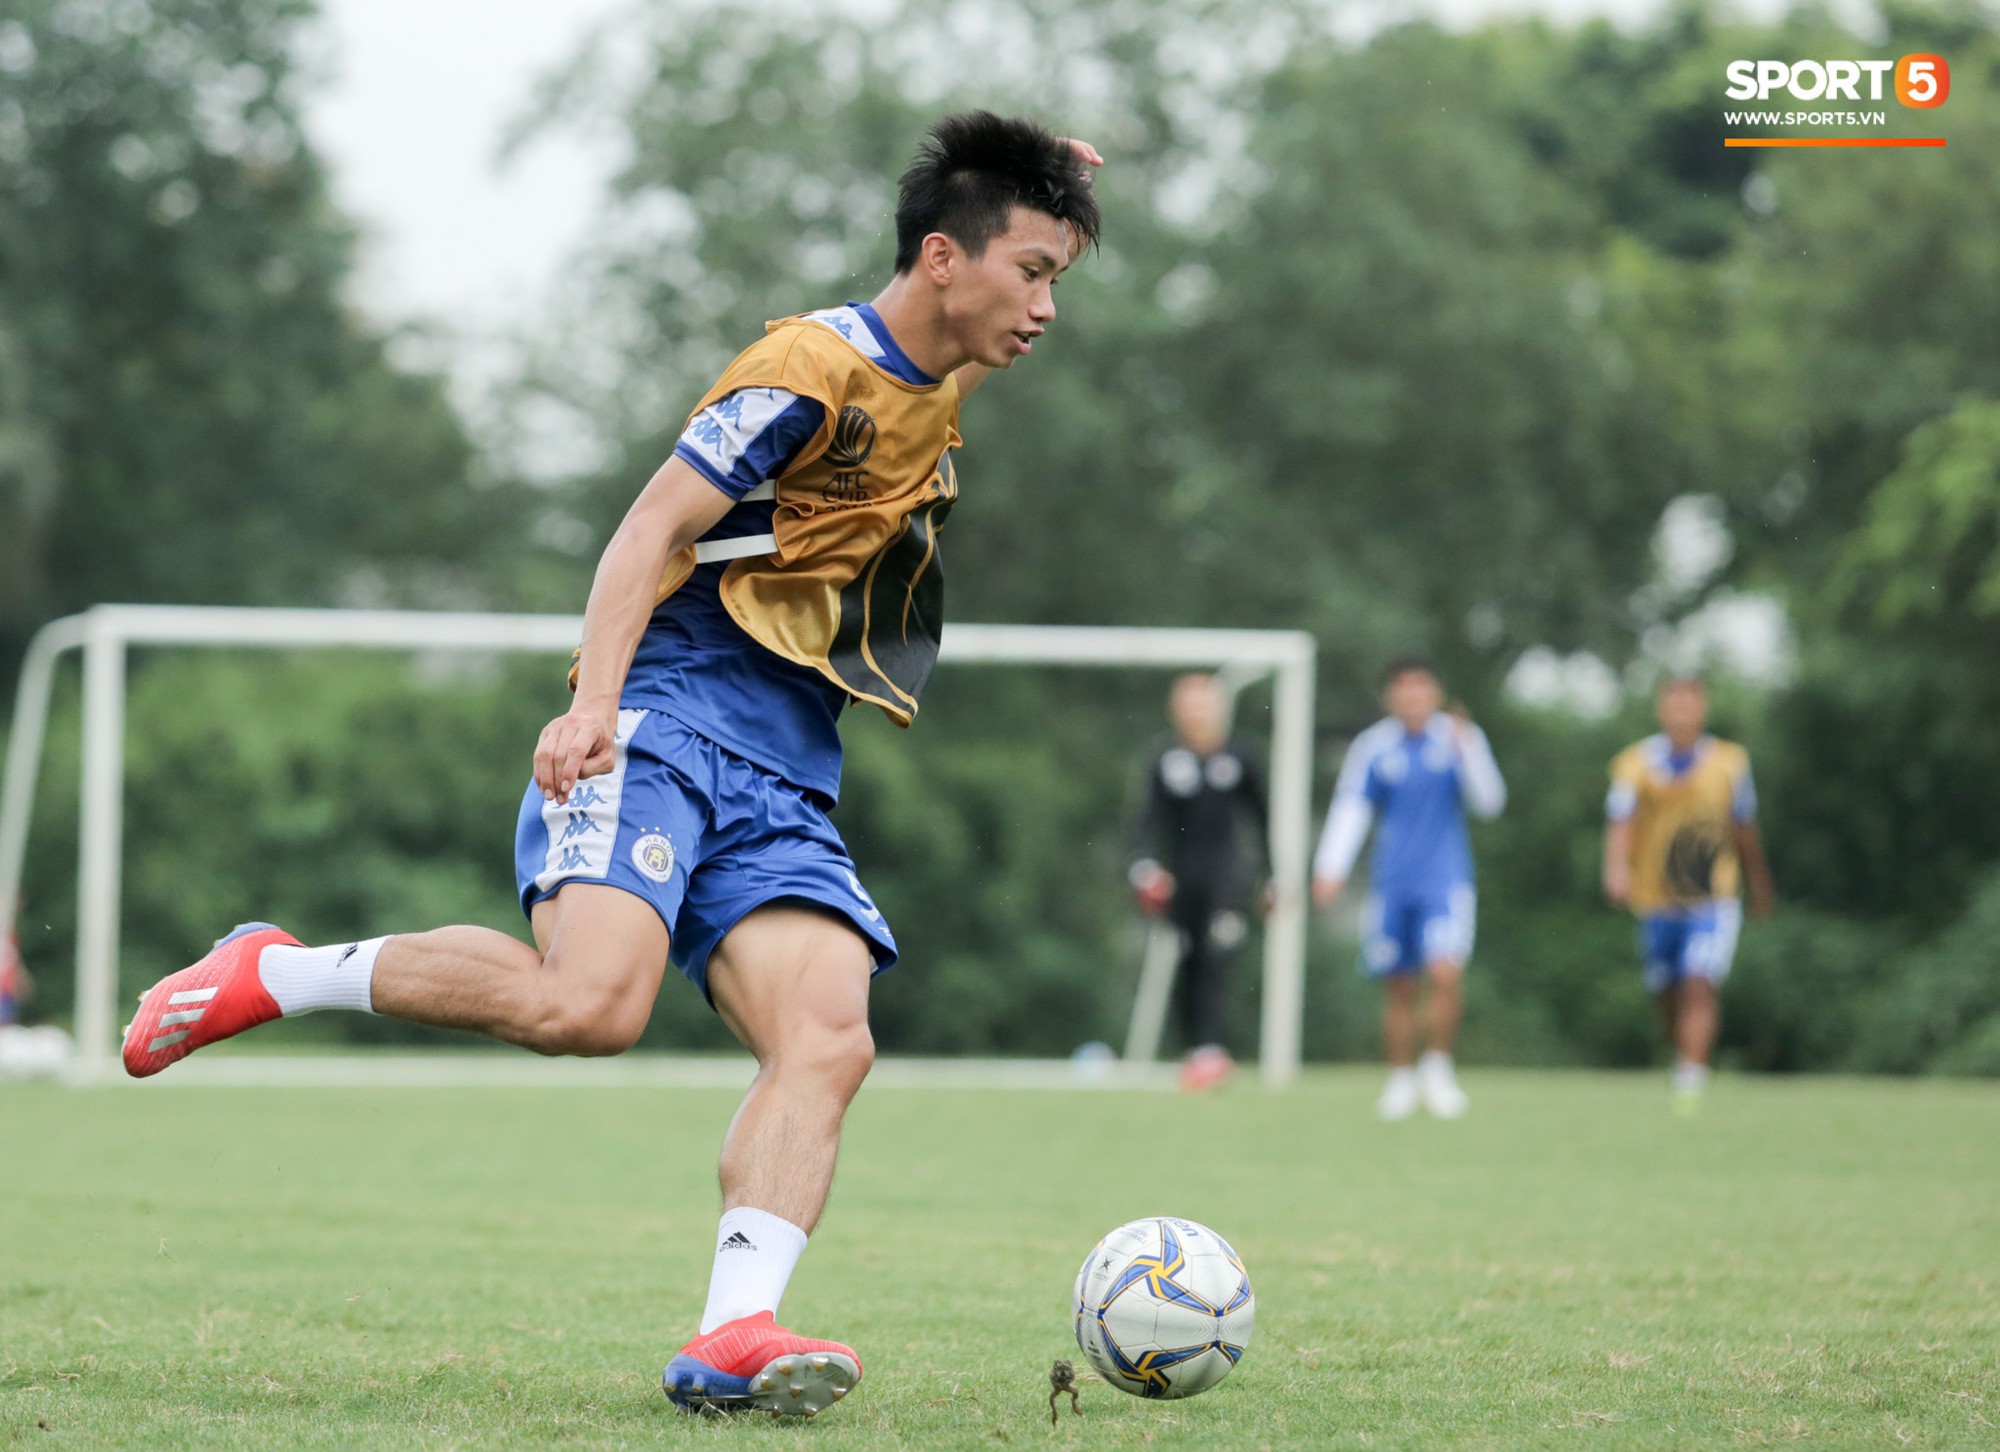 Bùi Tiến Dũng dính đòn, cầu thủ trẻ Hà Nội FC lấy ve sầu trêu đồng đội trước trận bán kết lượt về AFC Cup - Ảnh 7.